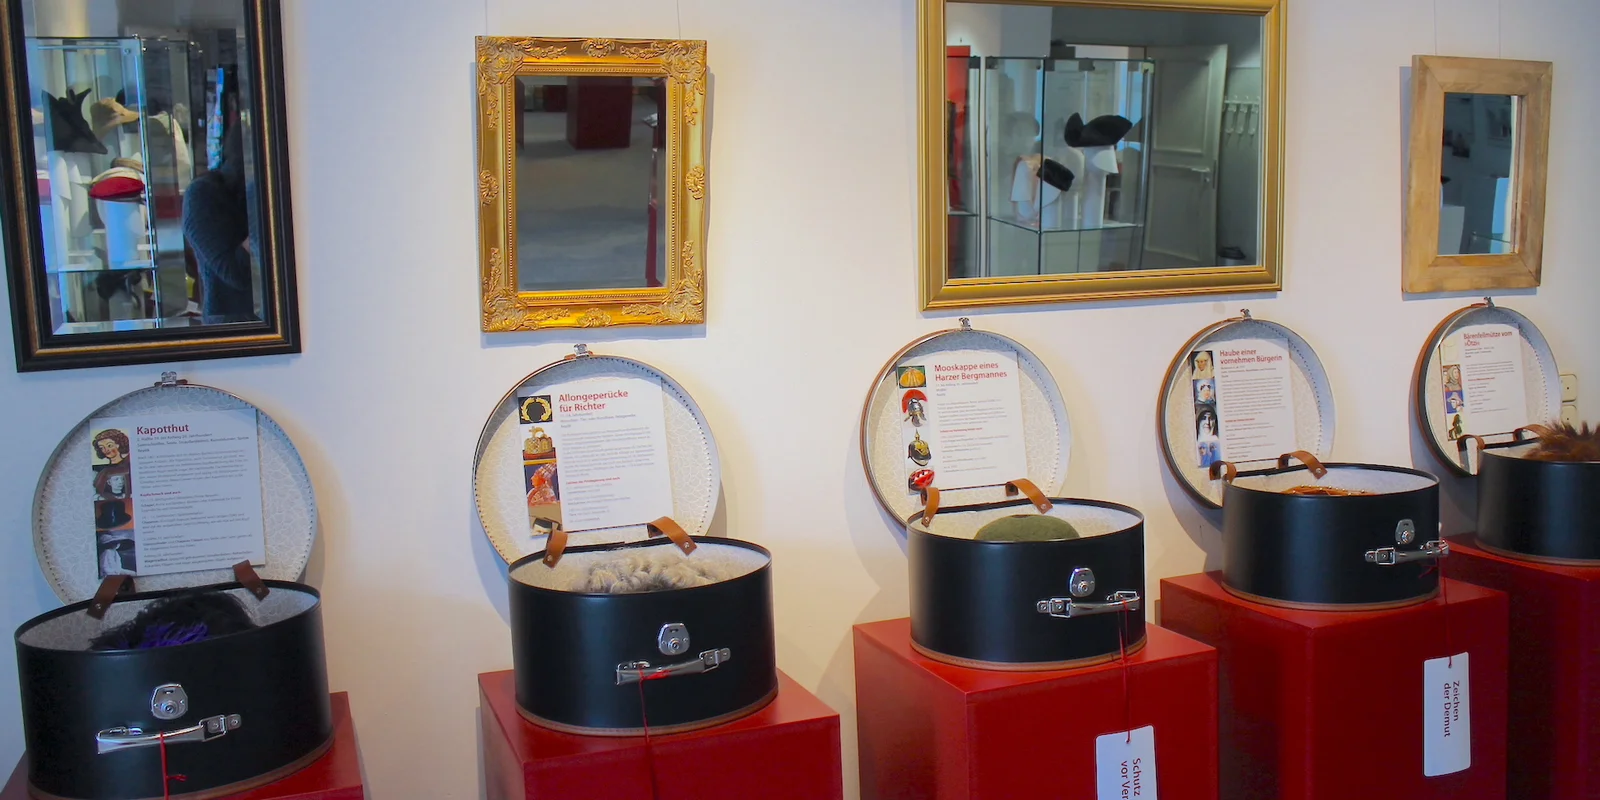 An einer Wand, an der verschiedene Spiegel hängen, stehen roten Podest mit offenen Hutschachteln, in denen unterschiedliche Hüte und Erläuterungstexte zu sehen sind